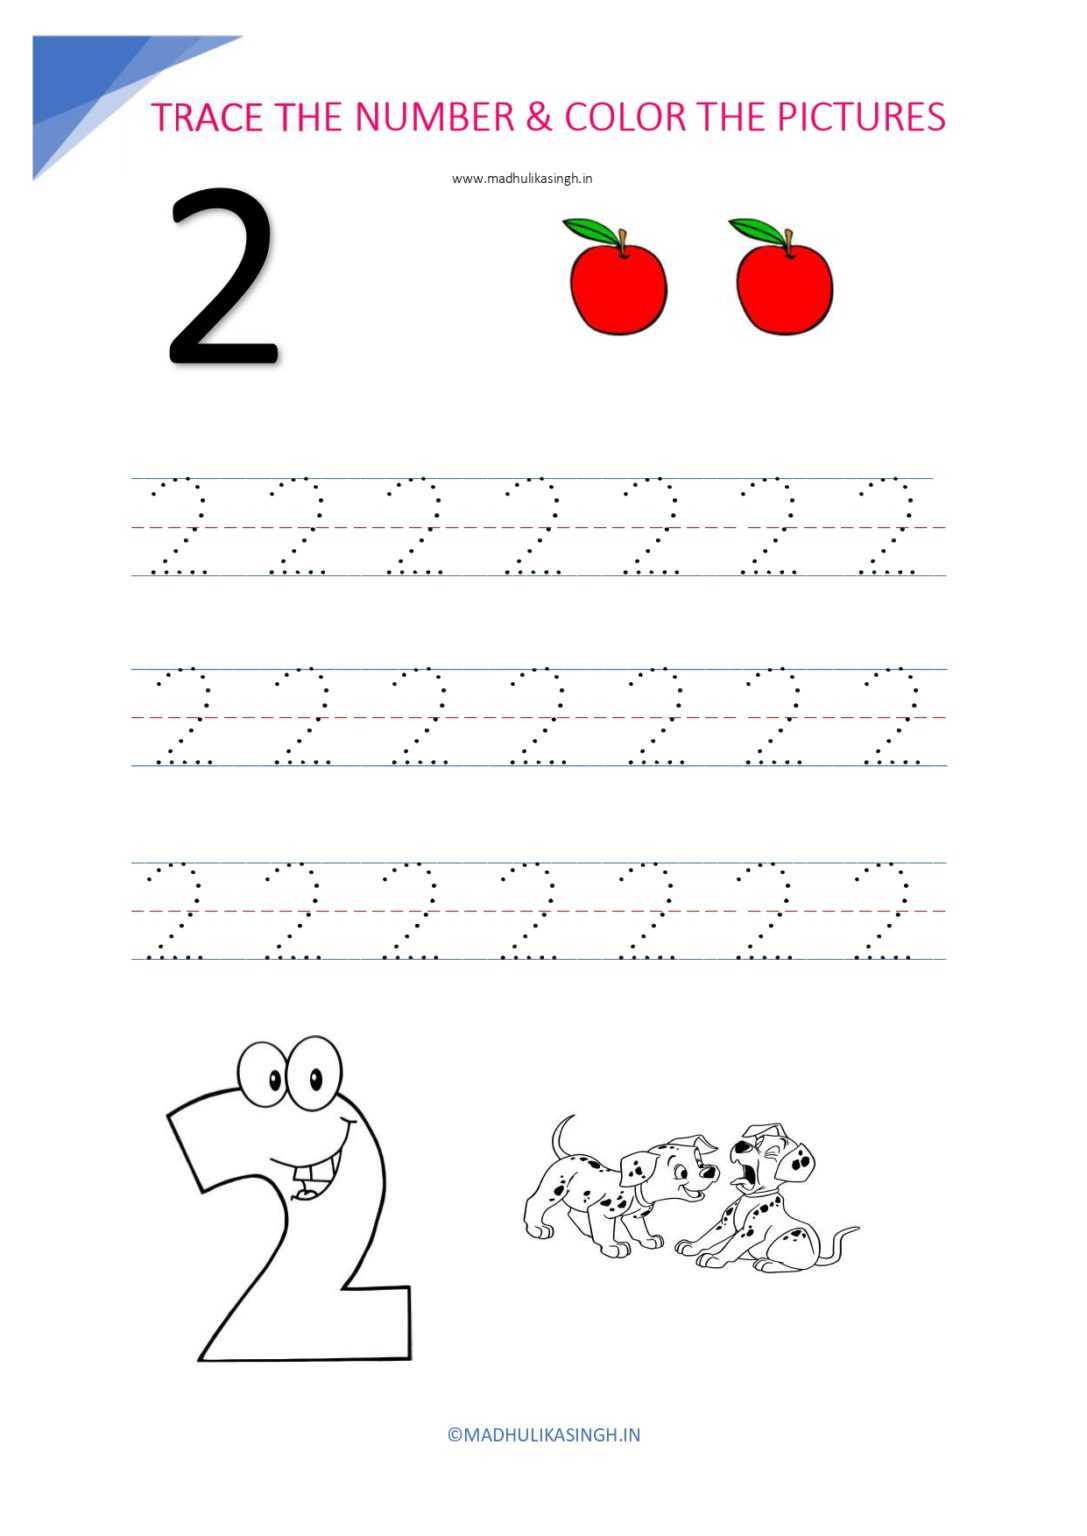 tracing-worksheets-numbers-1-20-tracing-worksheets-preschool-kindergarten-worksheets-all